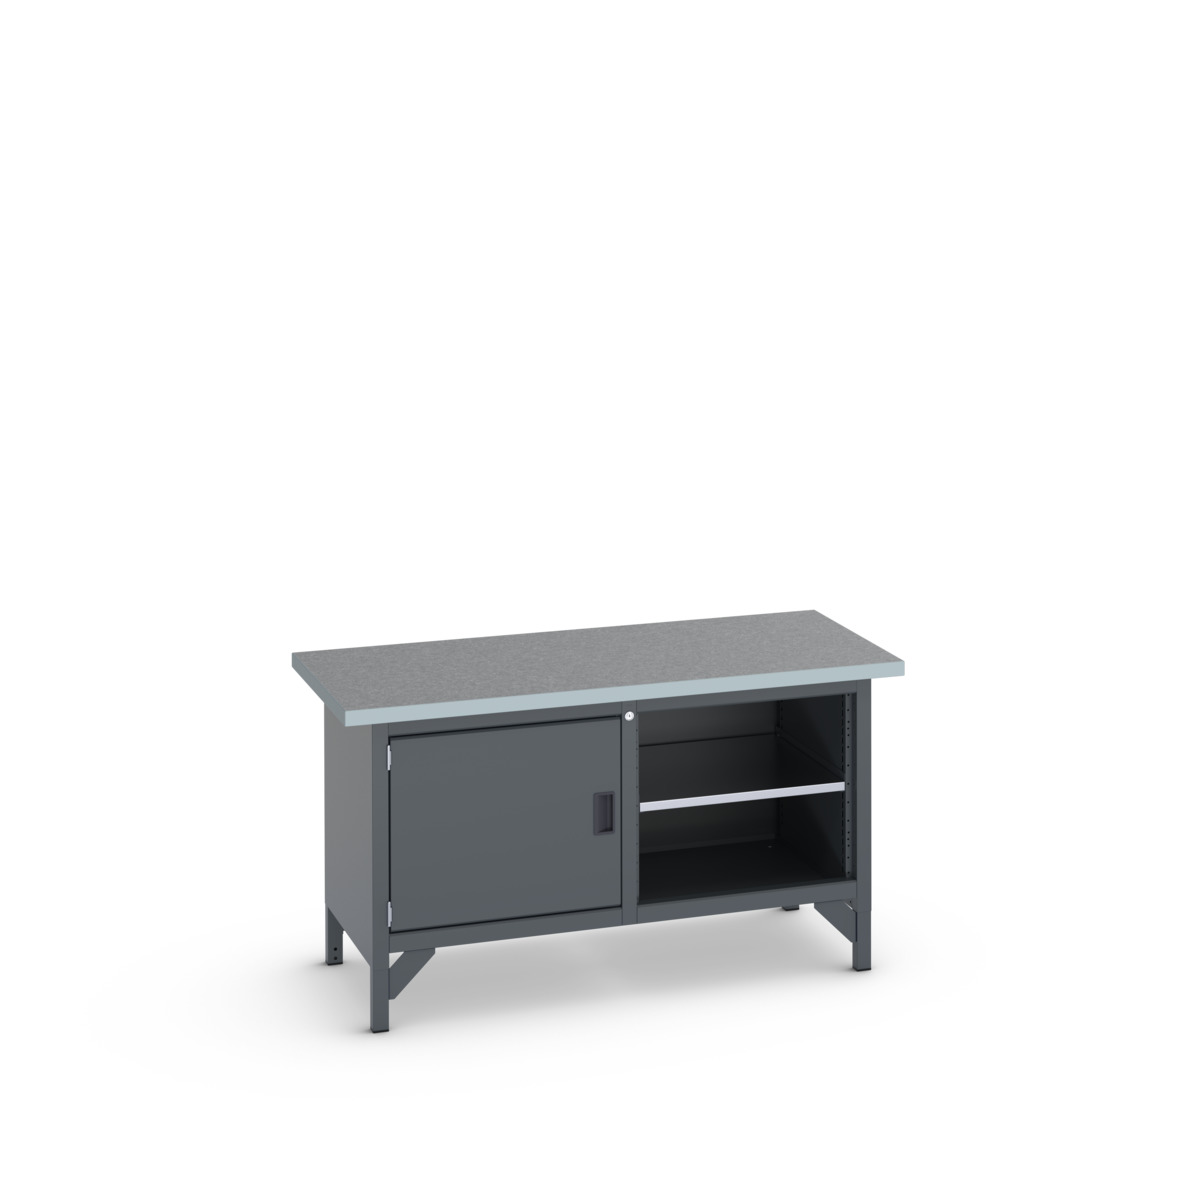 41002021.77V - cubio storage bench (lino)